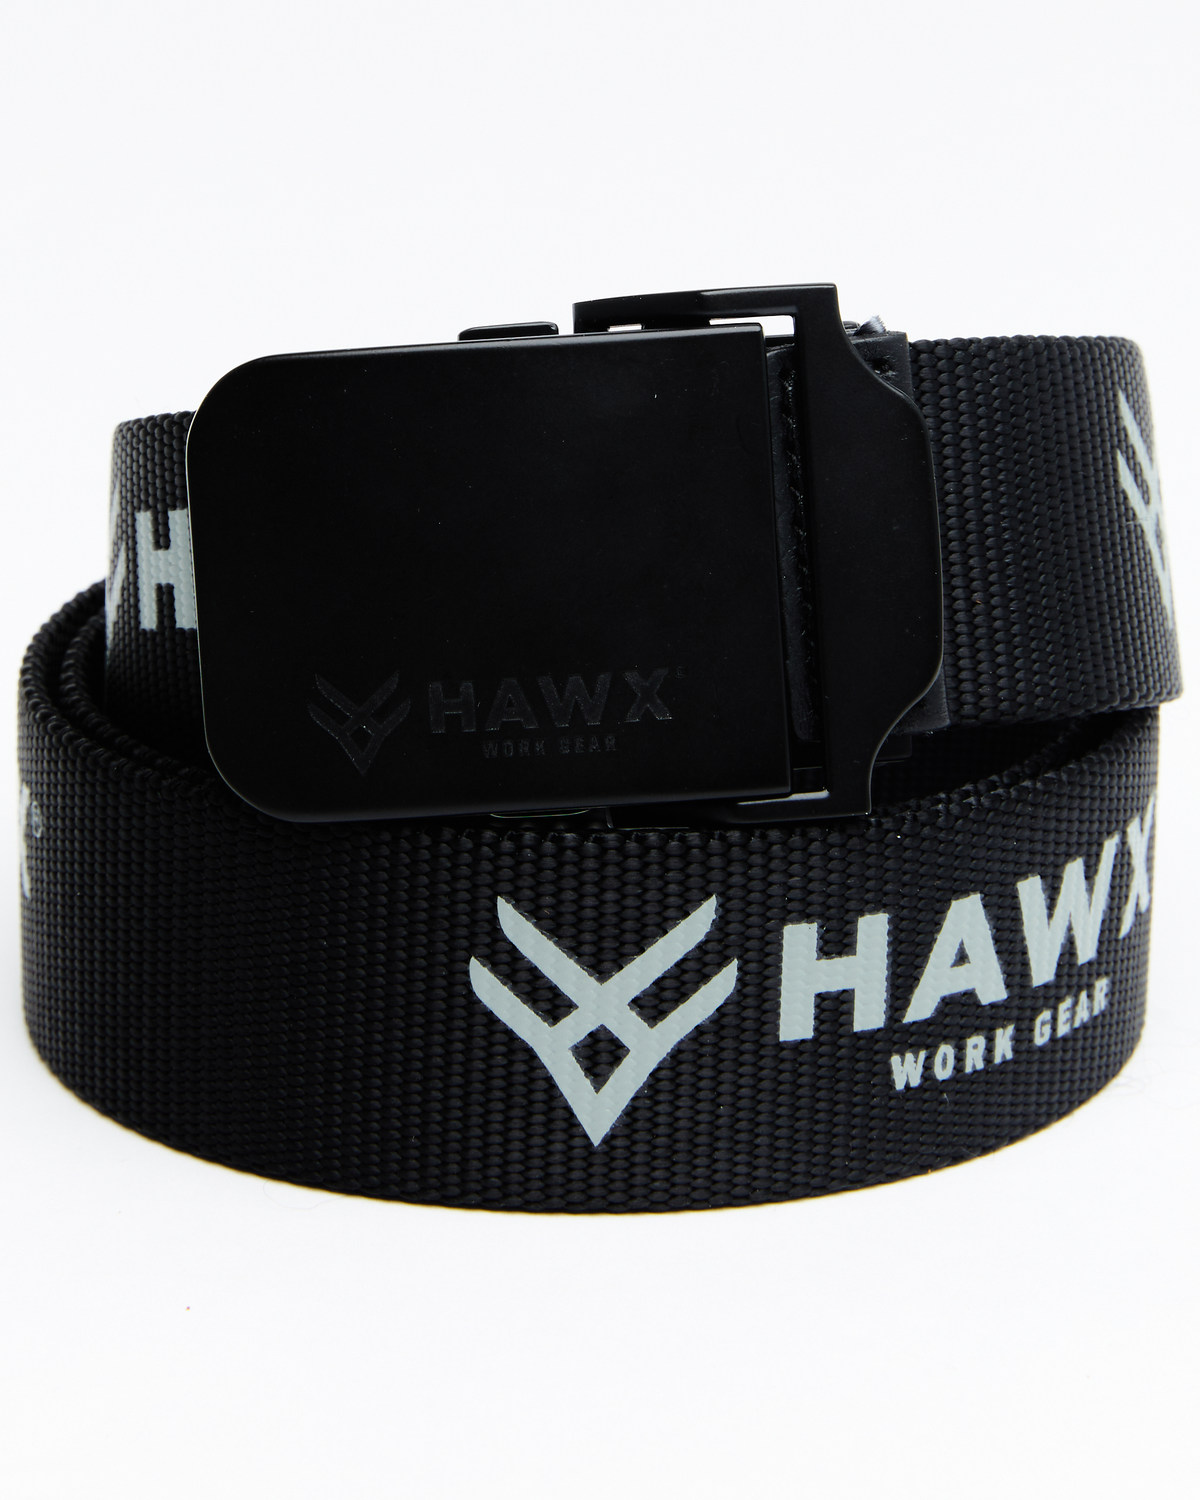 Hawx Men's Web Belt